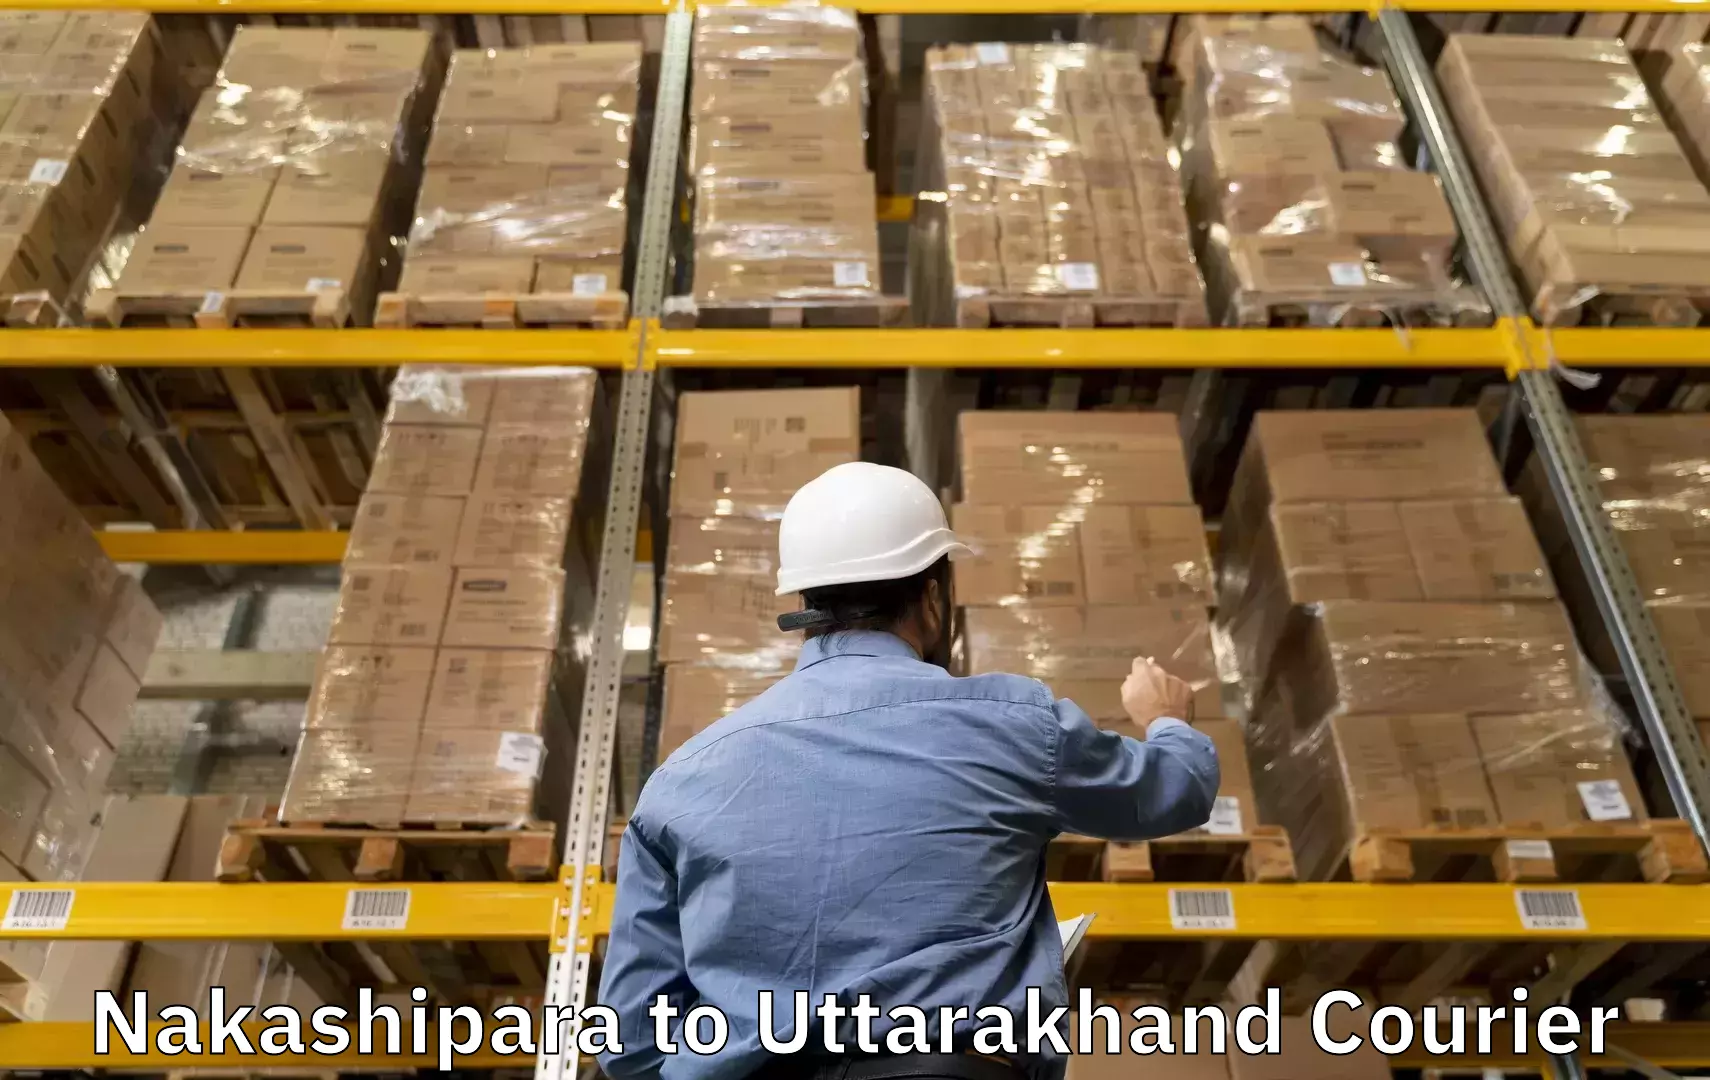 Luggage shipping service Nakashipara to Tanakpur